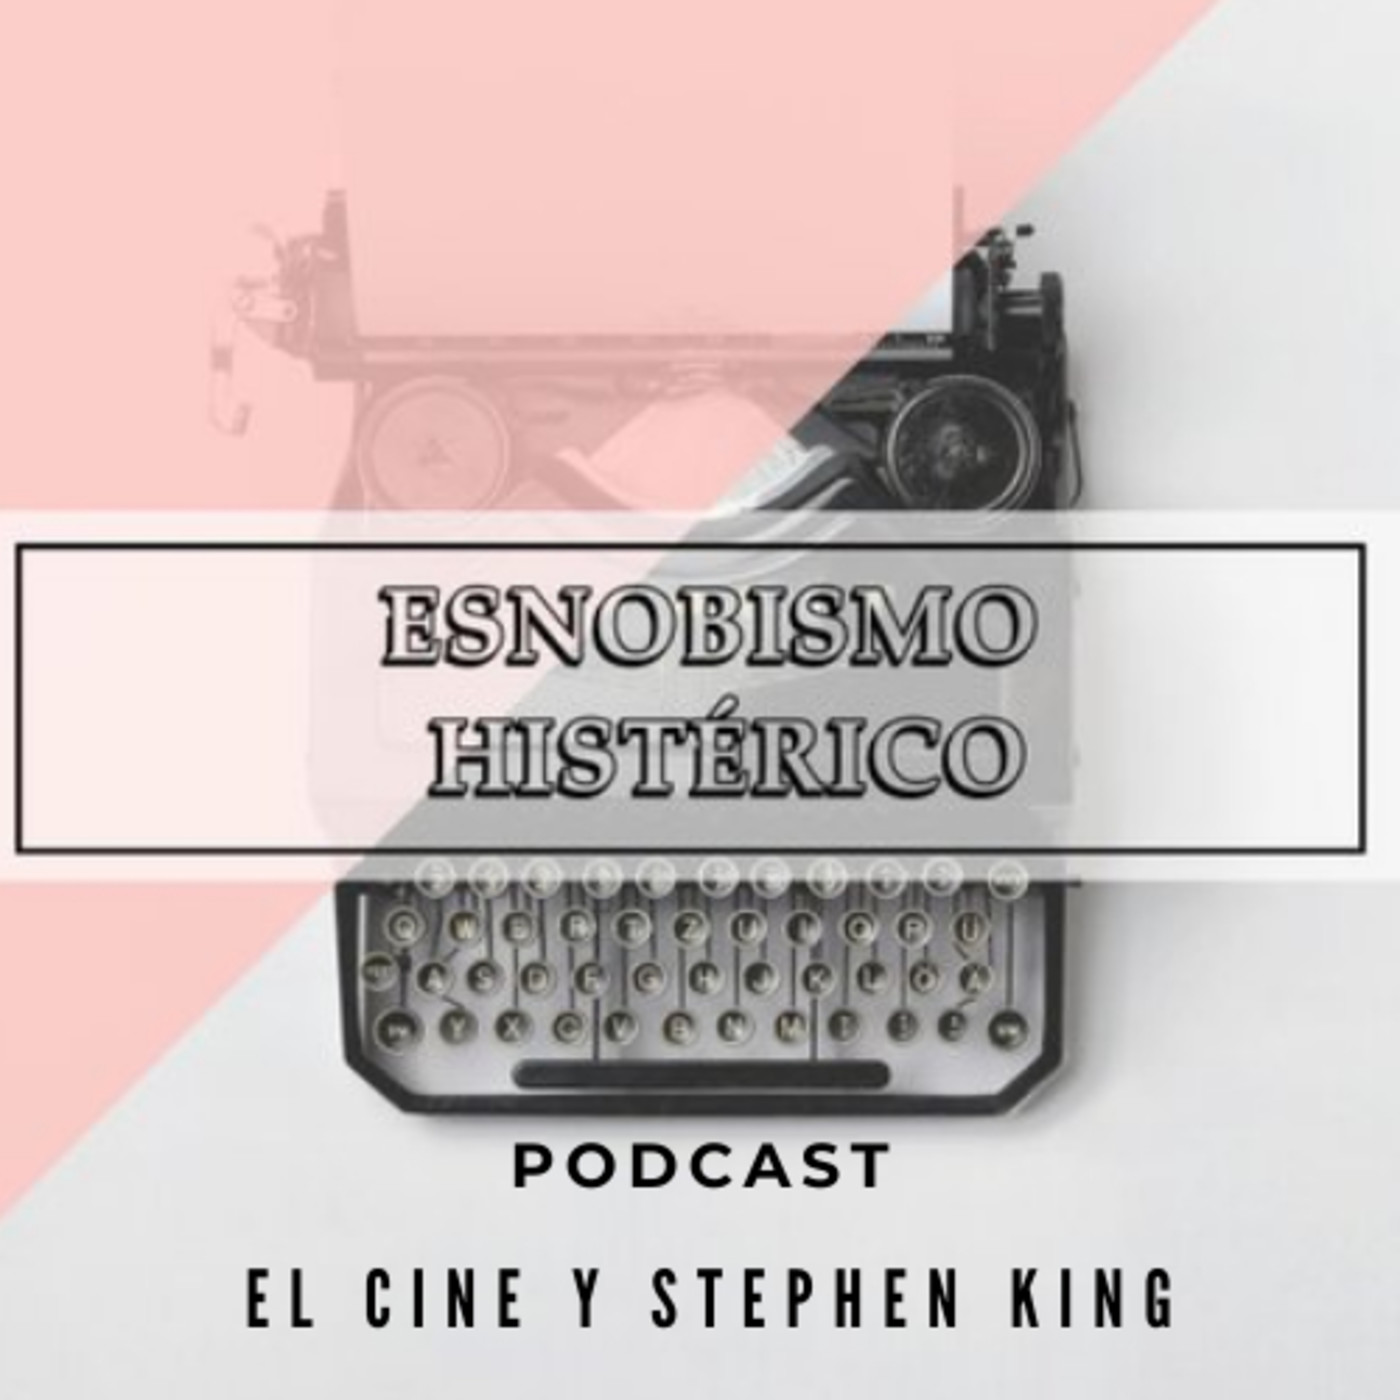 El cine y Stephen King: Obsesiones y sangre de cerdo